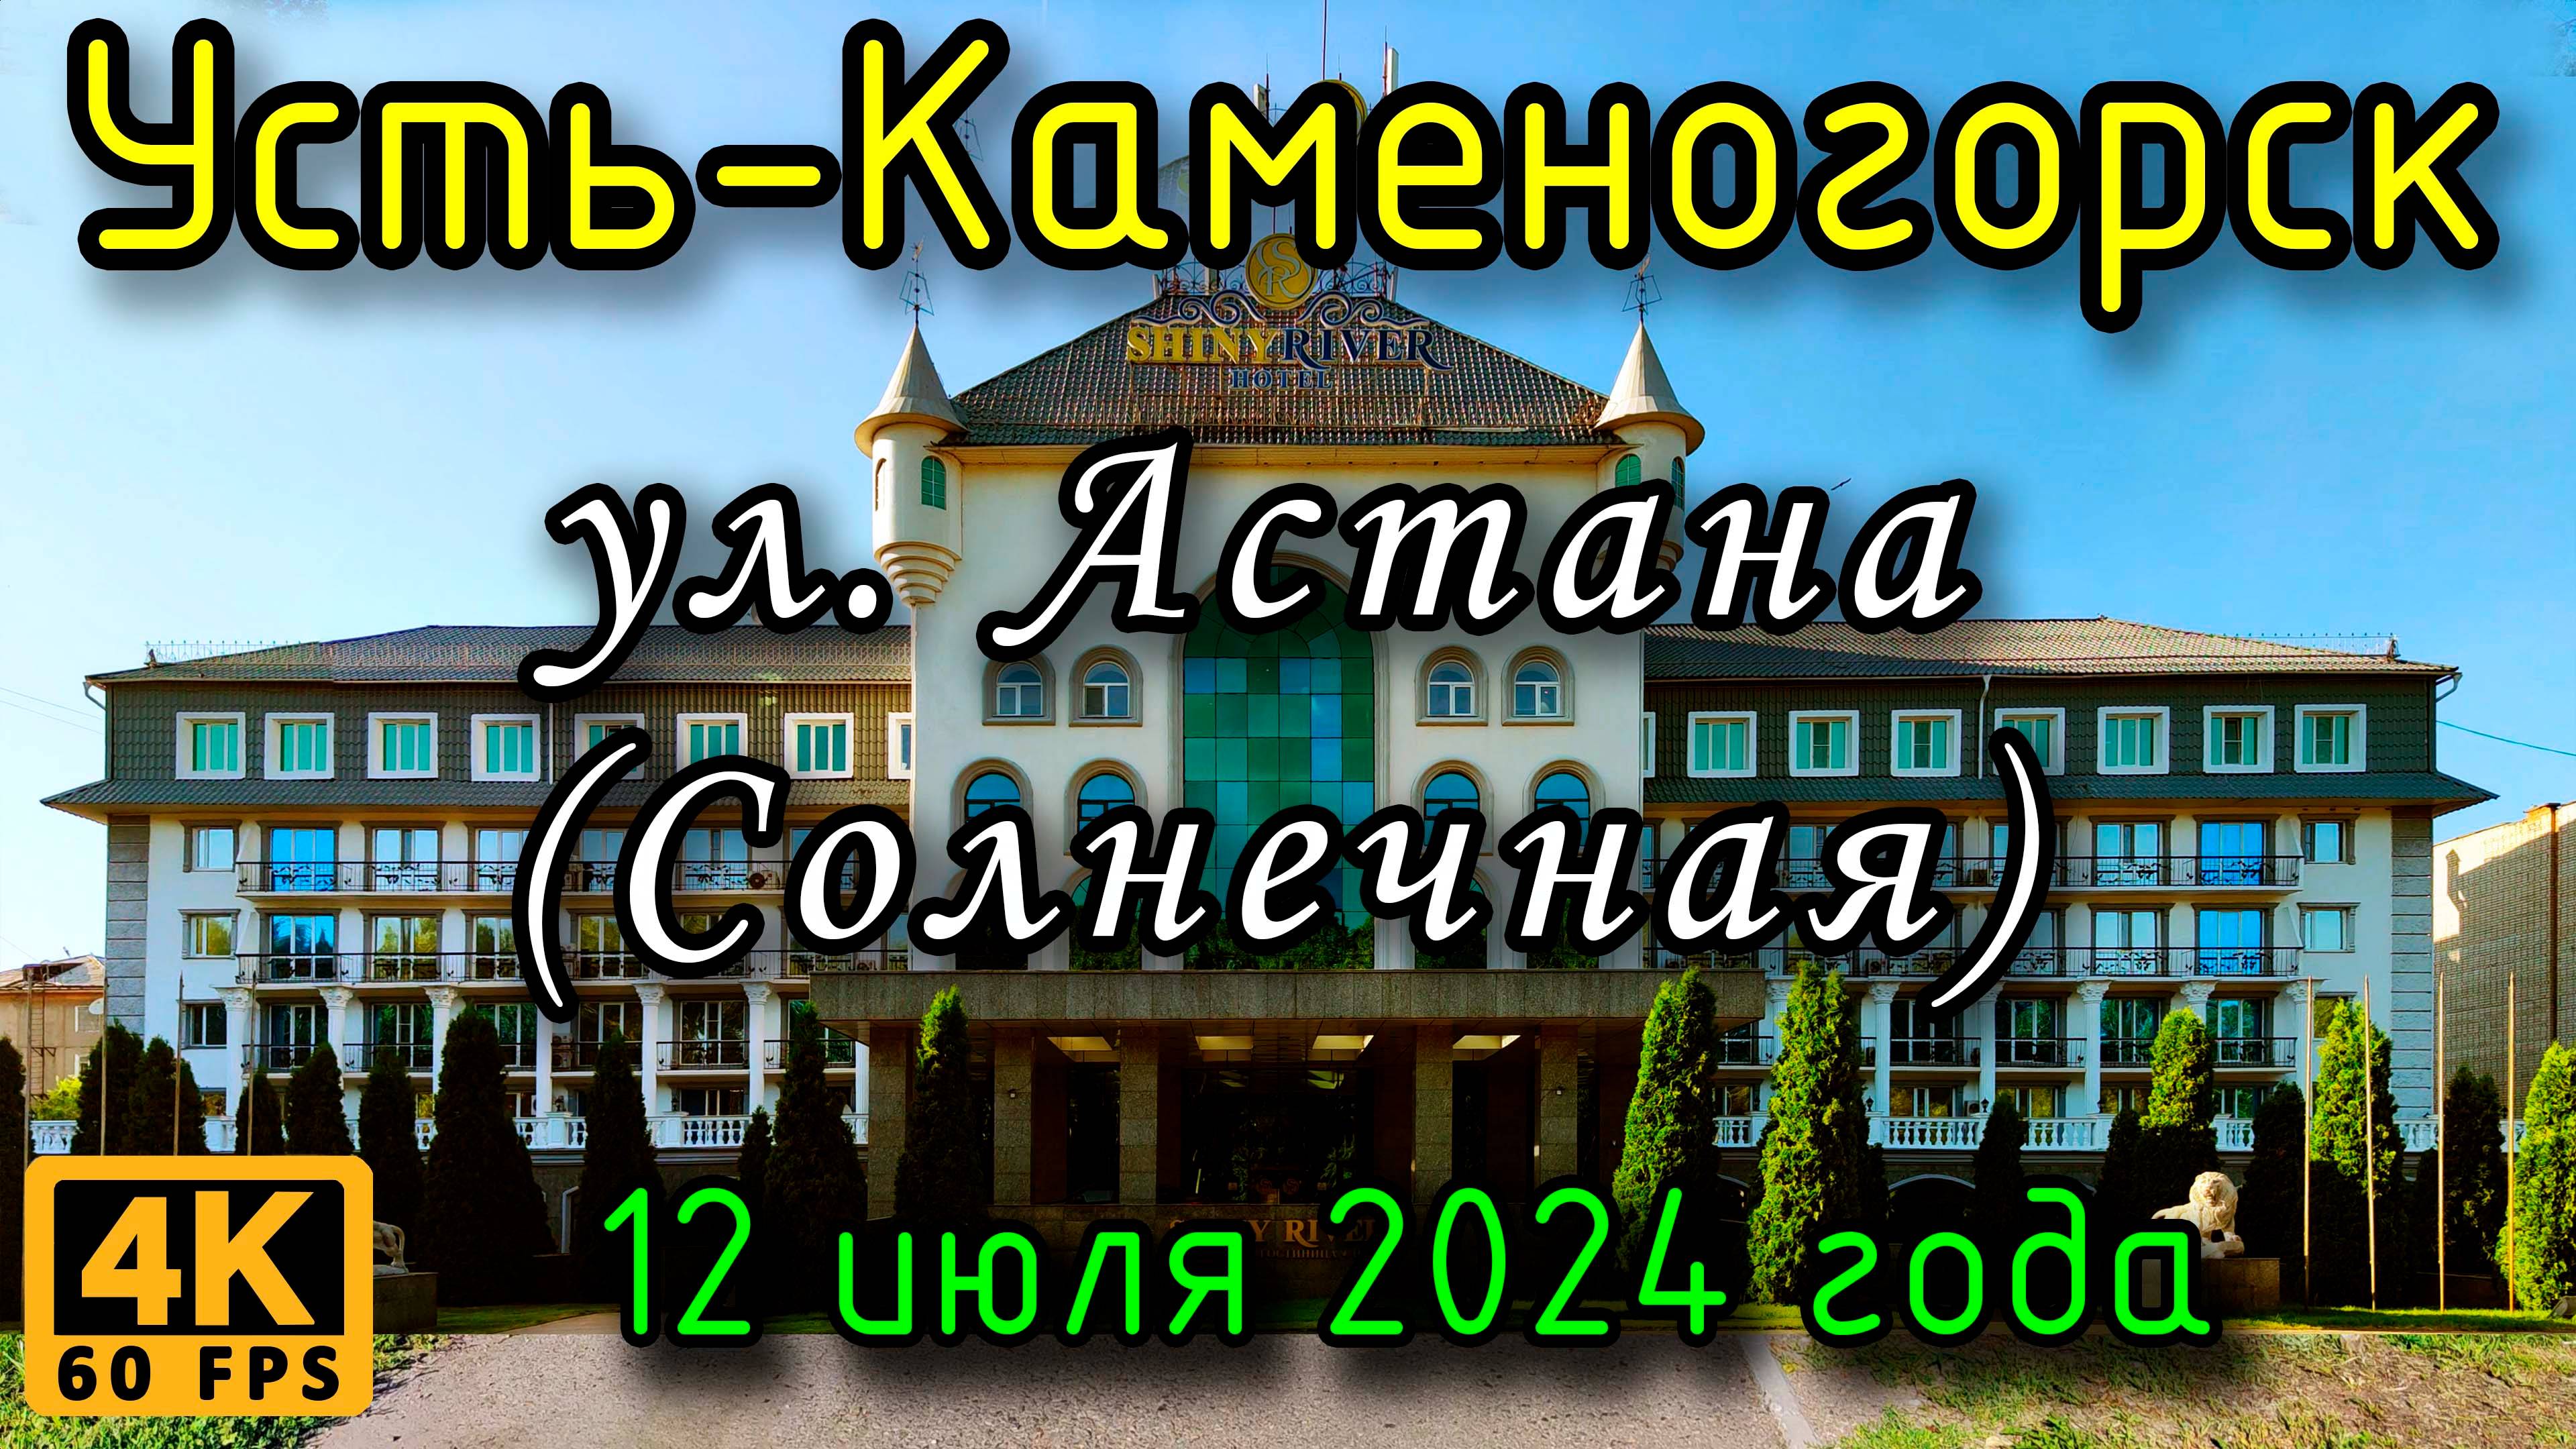 Усть-Каменогорск: ул. Астана (Солнечная) в 4К, 12 июля 2024 года.